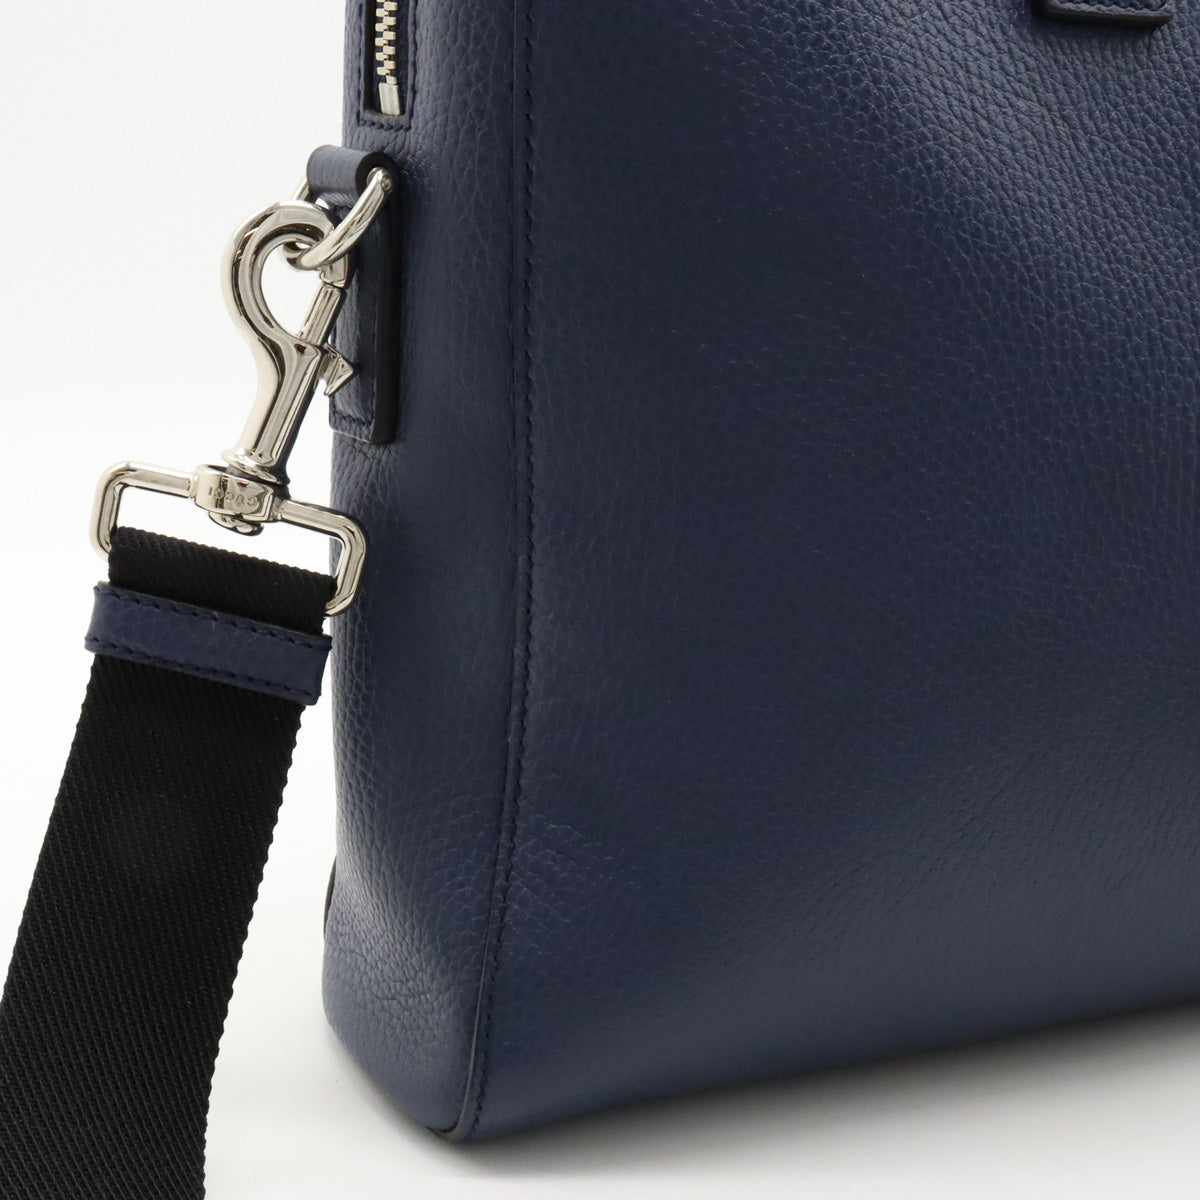 Gucci Gucci Business Bag Paper Bag Handbag 2WAY Shoulder Bag  Blue Black Silver Gold 387074 Blumin